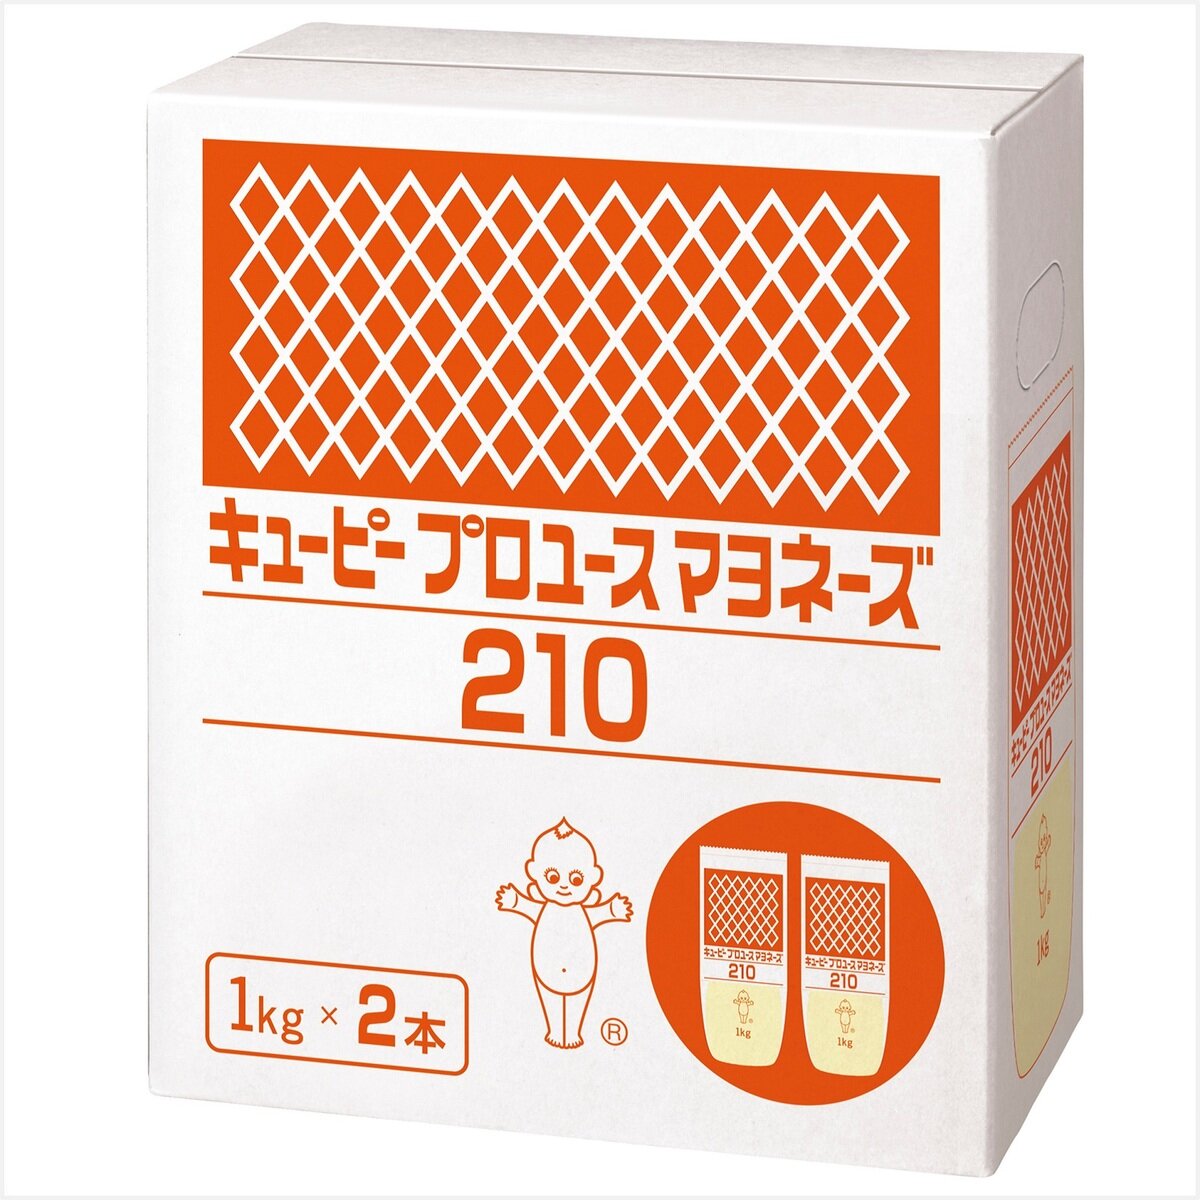 キユーピー プロユースマヨネーズ210 1kg x 2袋 | Costco Japan